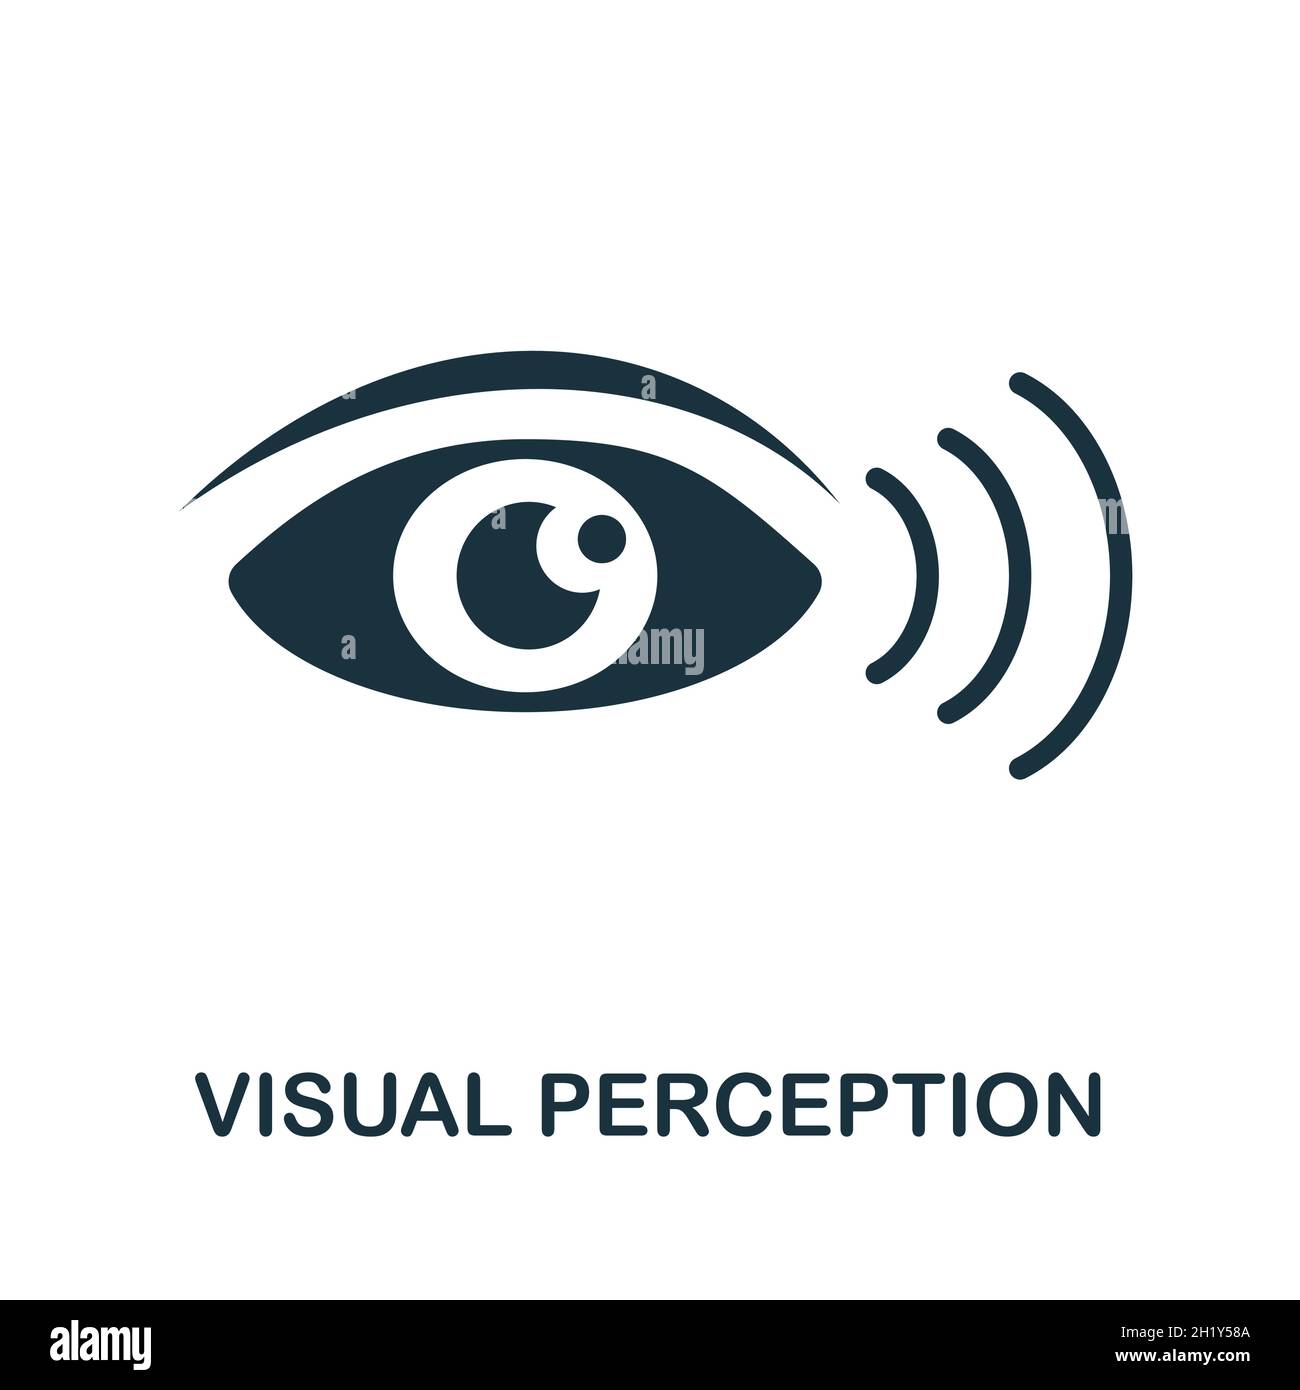 Symbol für die visuelle Wahrnehmung. Monochromes Schild aus der Sammlung kognitiver Fähigkeiten. Creative Visual Perception Icon Illustration für Web-Design, Infografiken Stock Vektor